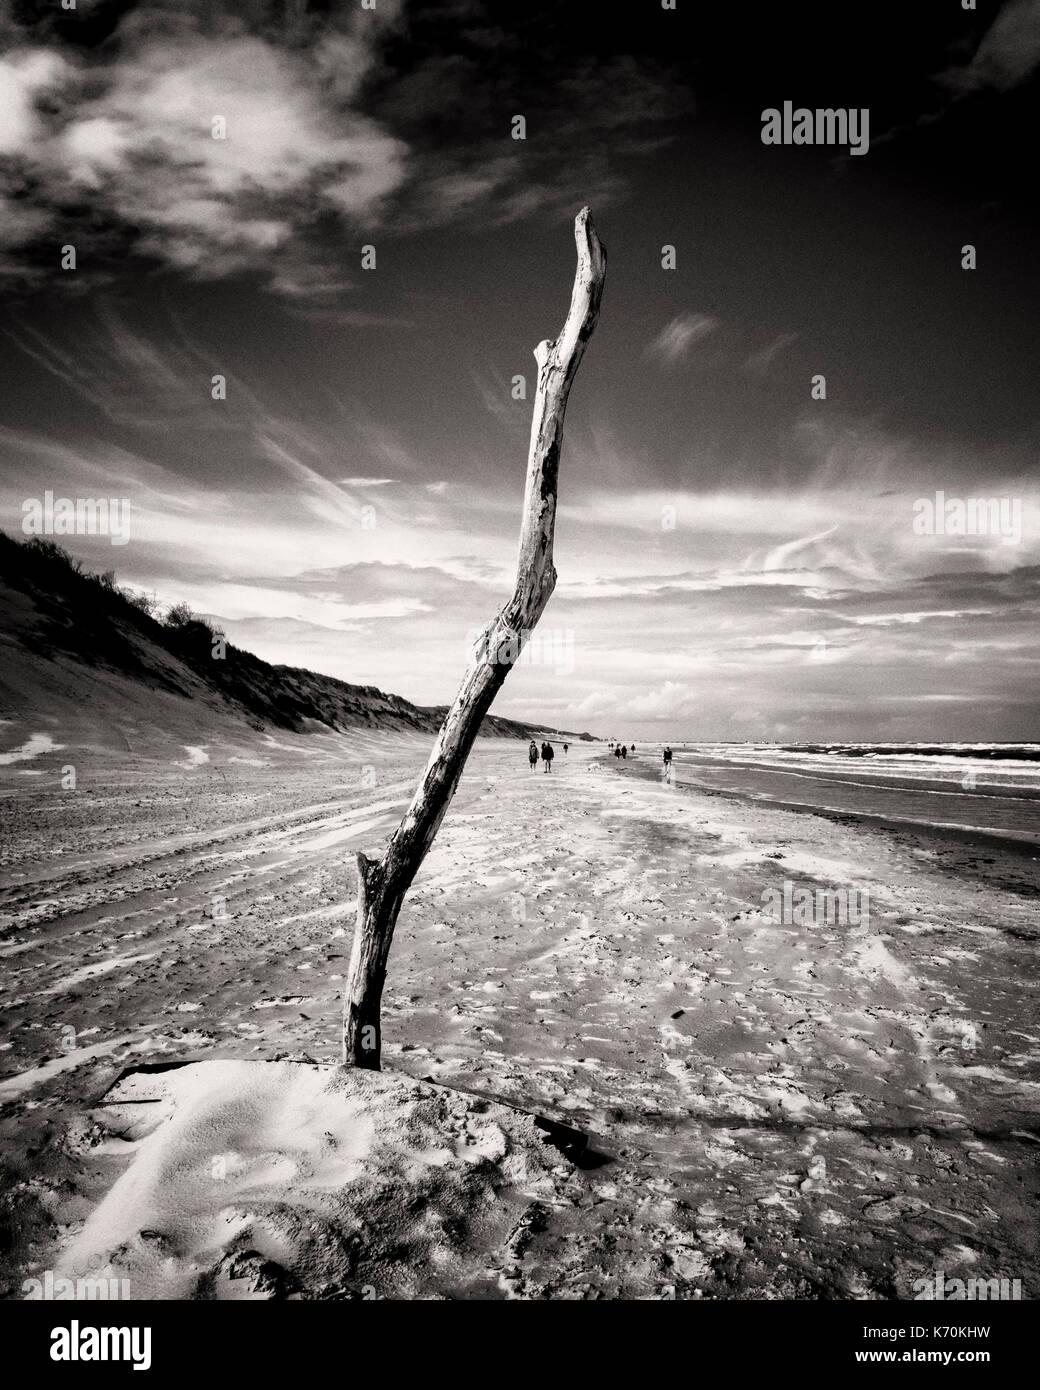 Langeoog, Deutschland. Ein Stück Treibholz im Sand am Strand stand-up groß und deutlich gegen den Himmel. Blick auf den Strand entlang der Küste mit Sand Dünen auf der einen Seite und auf der anderen Seite. Touristen erscheinen winzig in der Ferne, wie Sie entlang der sandigen Strand entfernt. Stockfoto